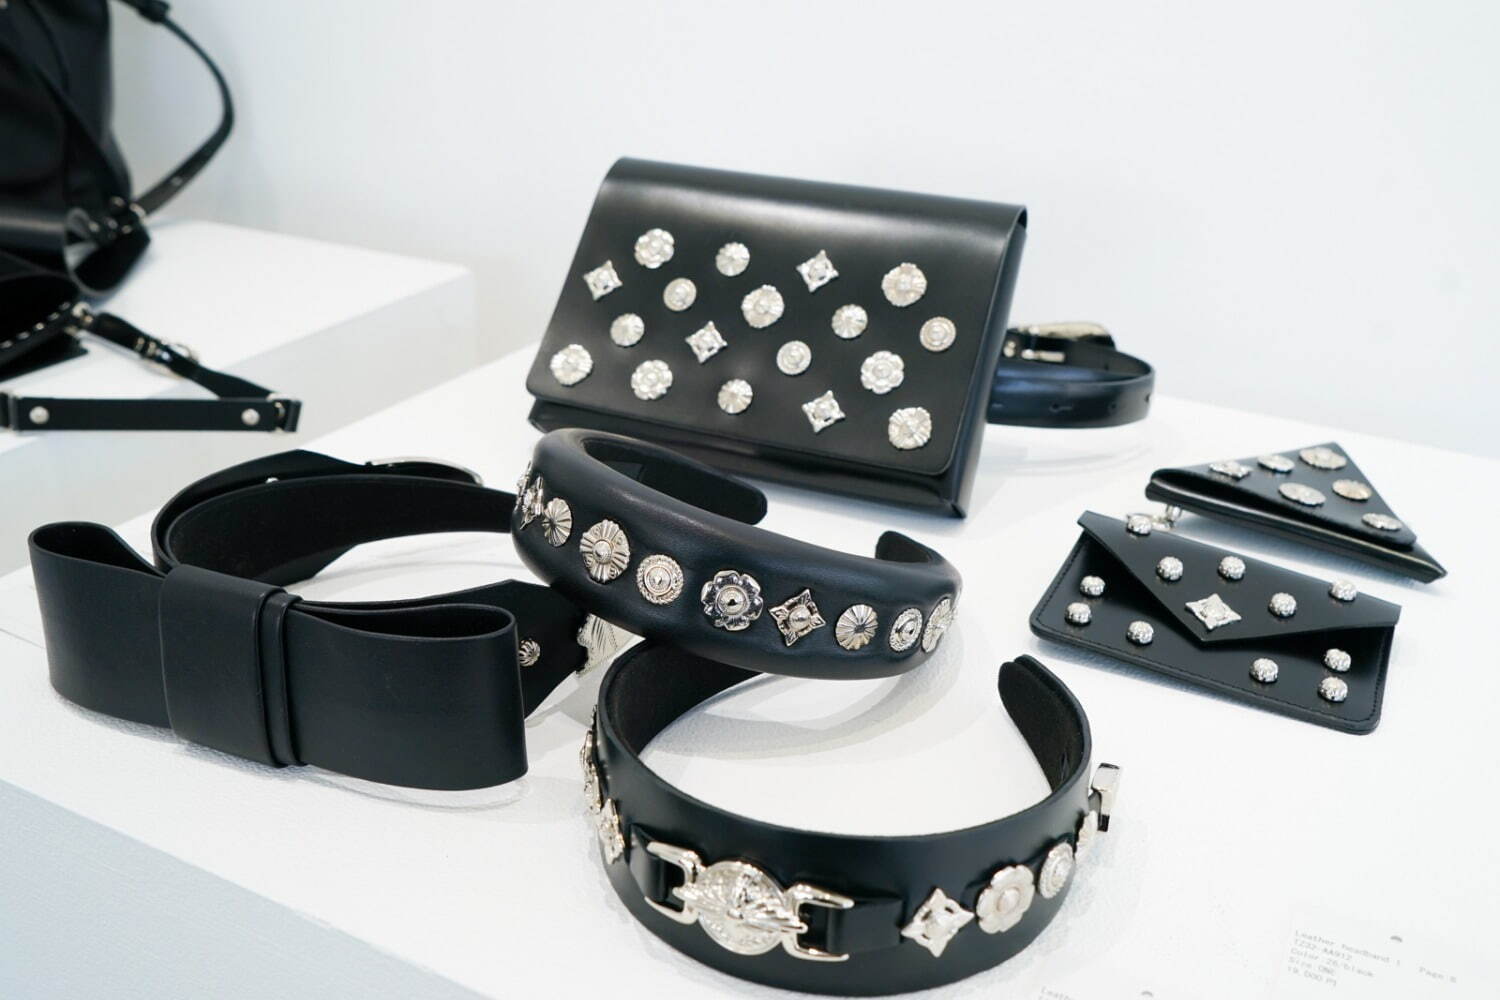 左から)Leather headband ribbon 22,000円
Leather headband 1 20,900円
Leather headband 2 19,800円